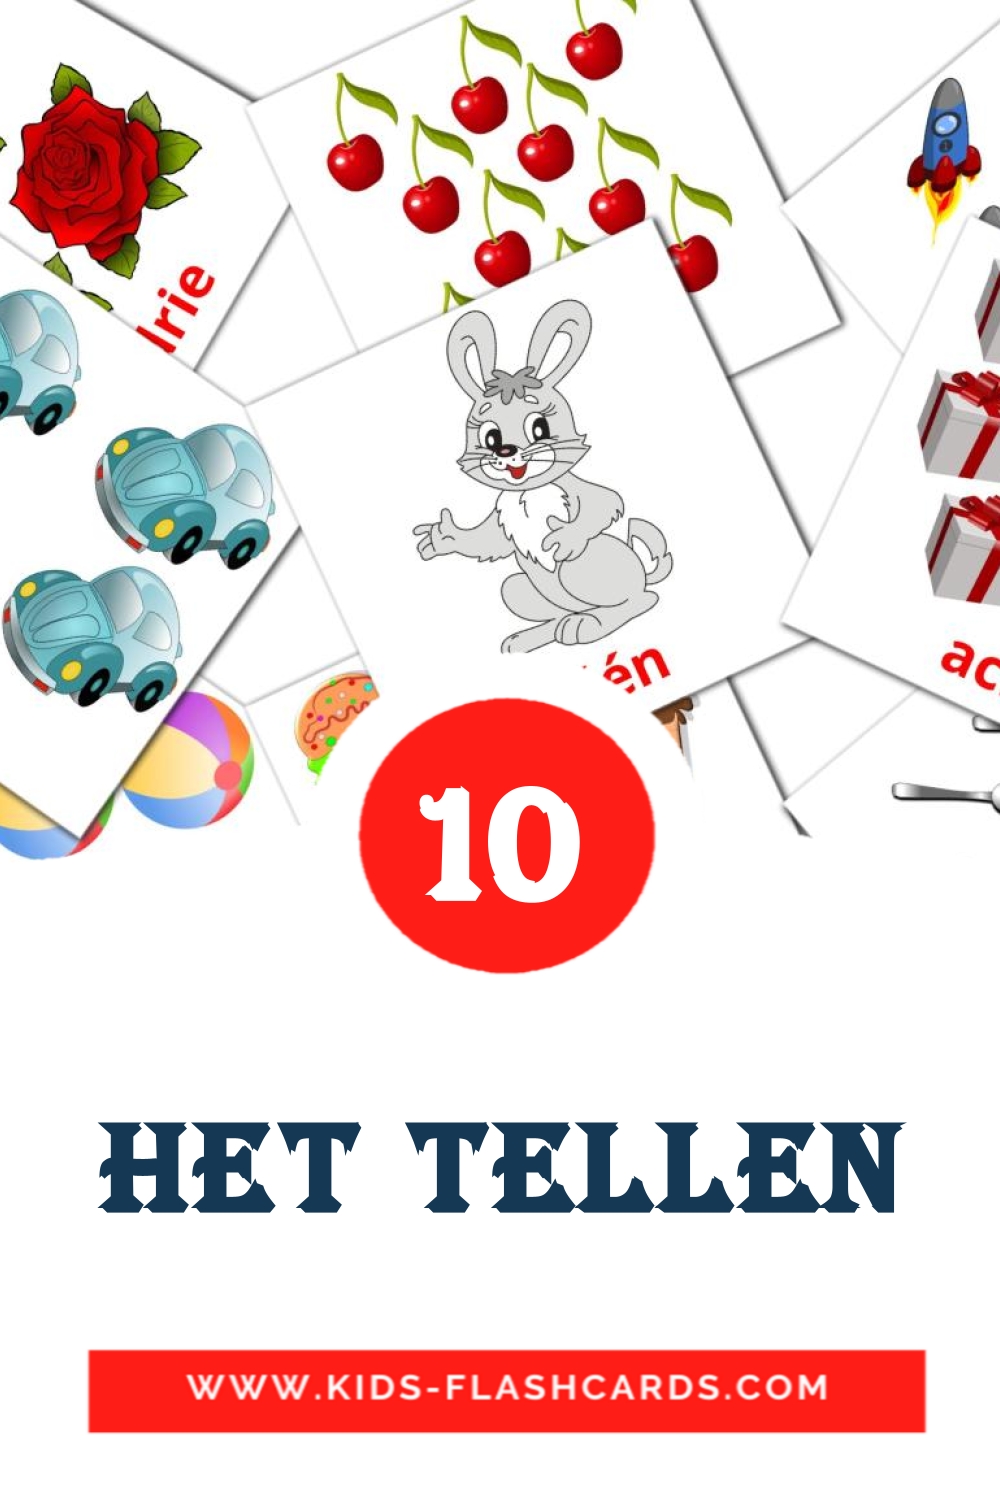 10 cartes illustrées de Het tellen pour la maternelle en néerlandais